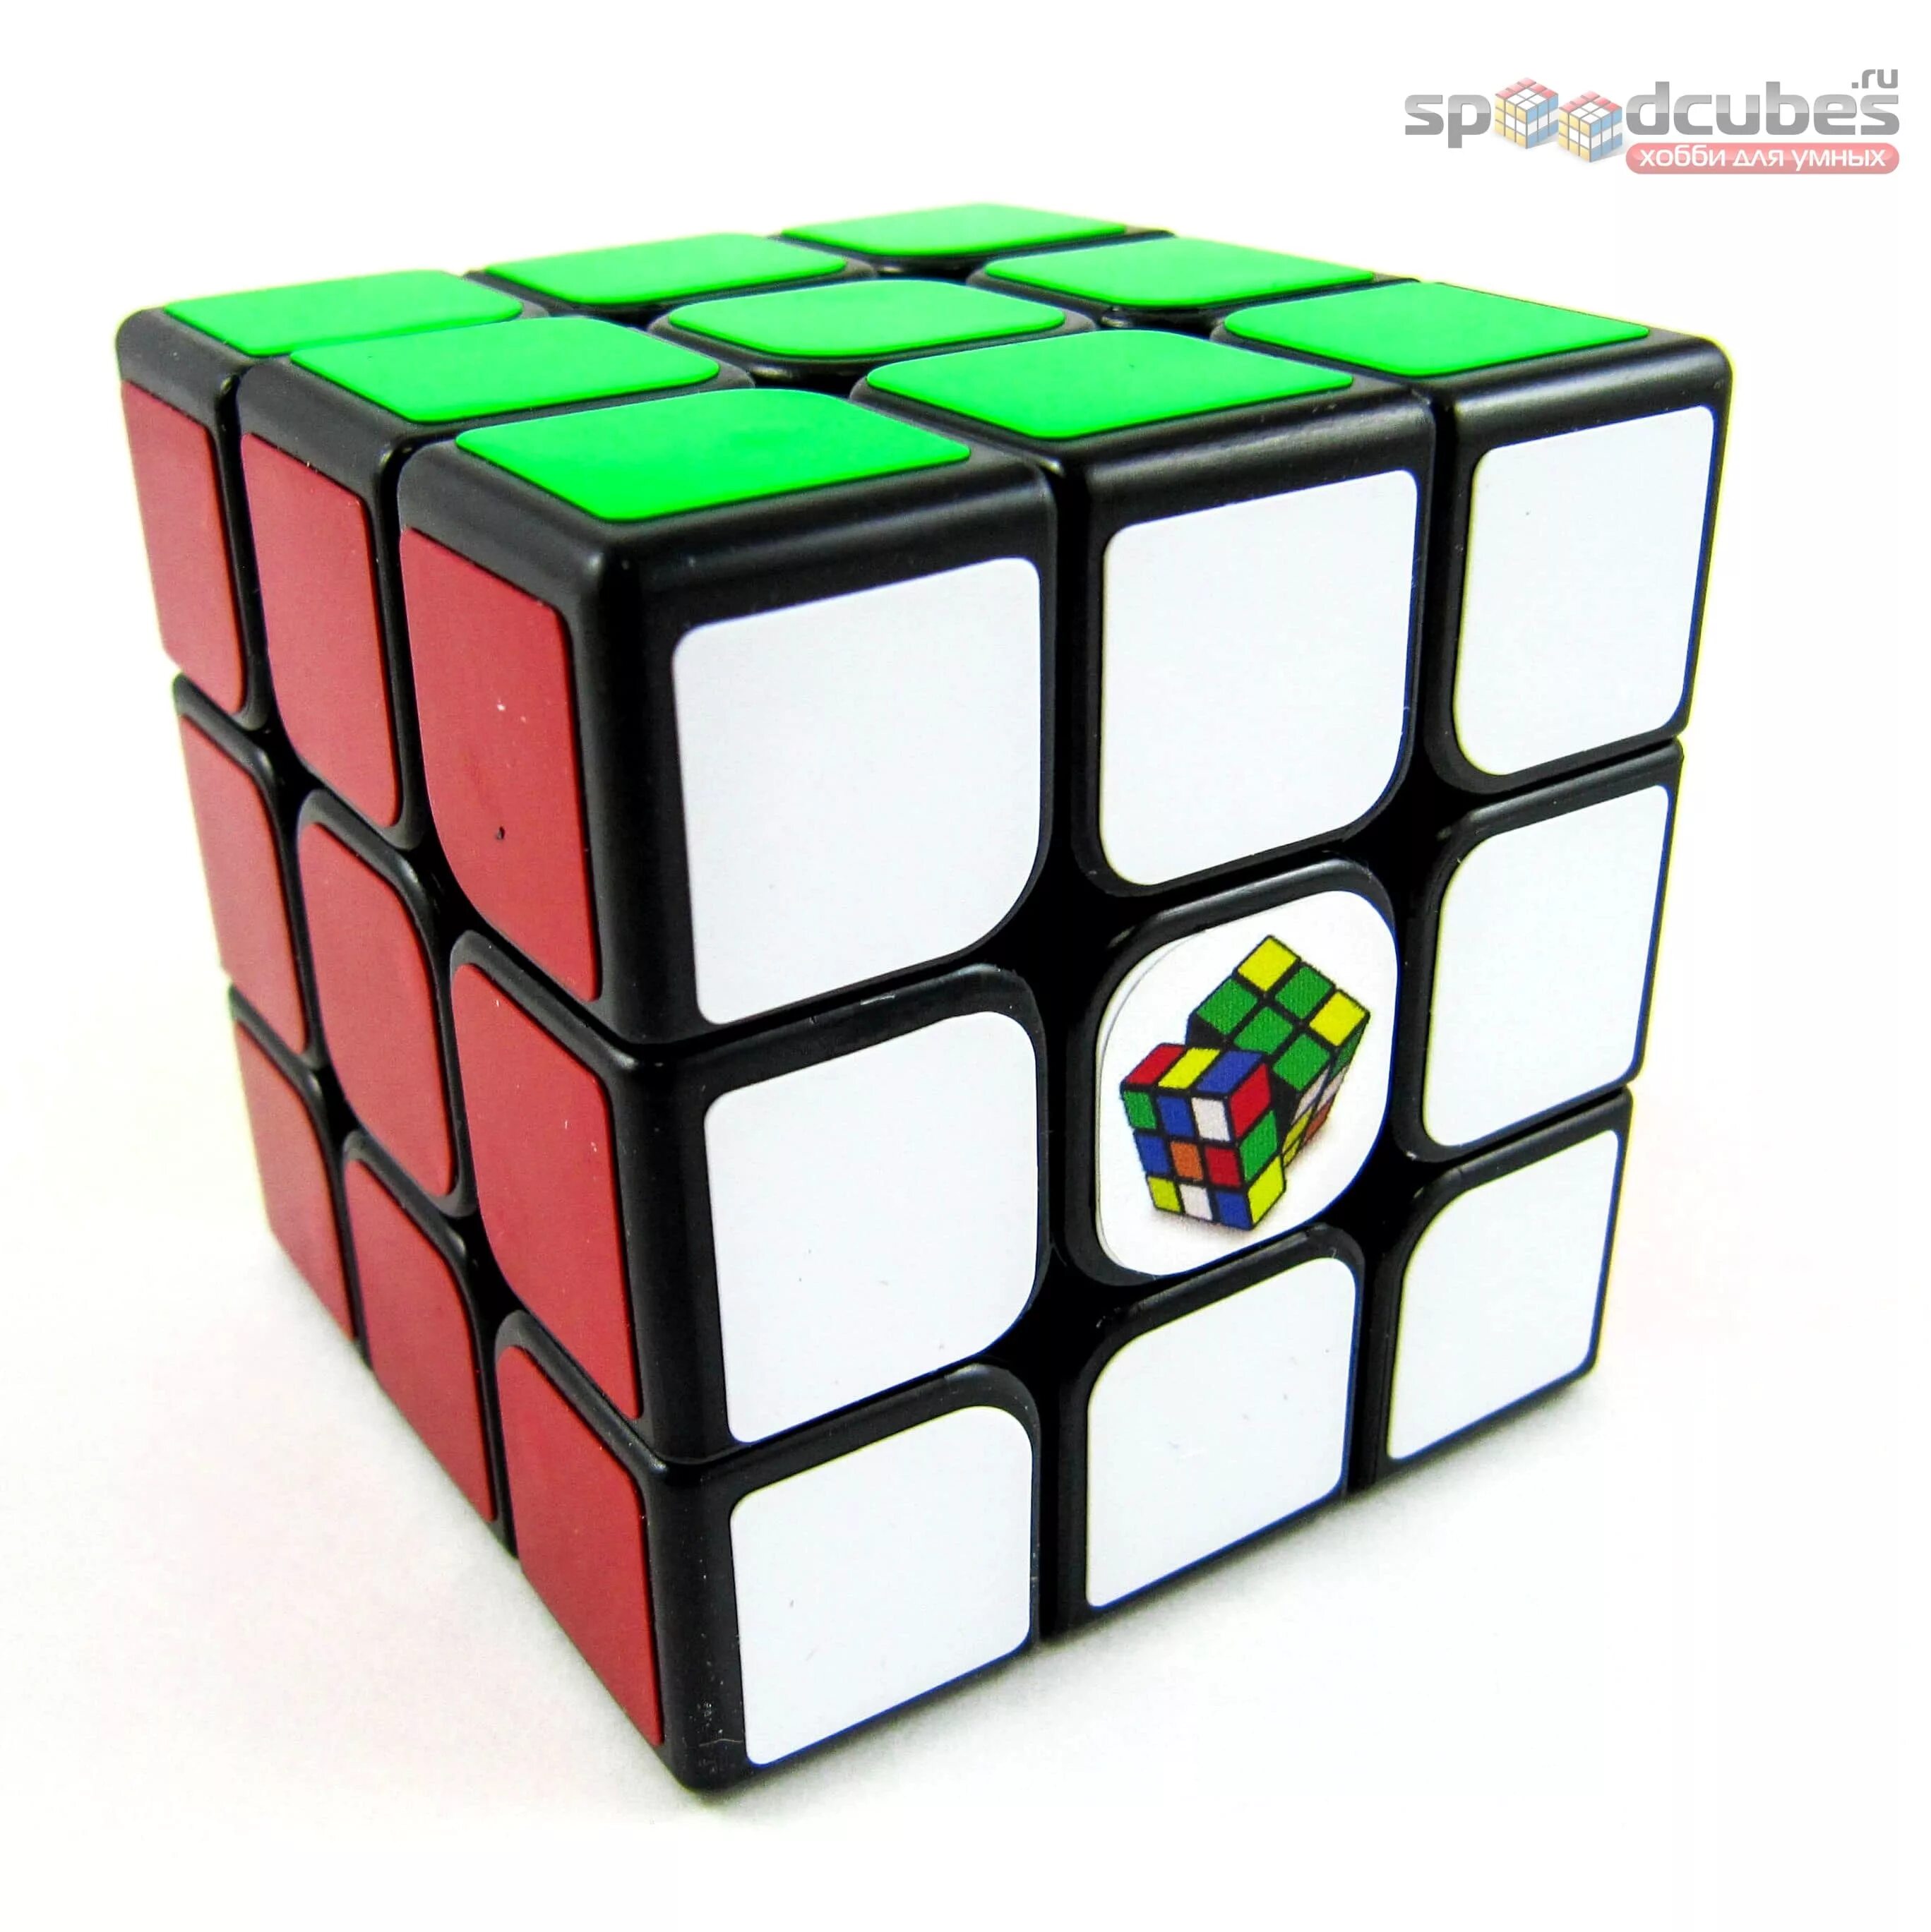 Купить куб в уфе. Кубик Рубика 3х3х3. Головоломка MOYU 3x3x3 Guanlong с наклейками. Головоломка MOYU 5x5x5 Cubing Classroom (MOFANGJIAOSHI) mf5 с наклейками. Кубик рубик 20 на 20.